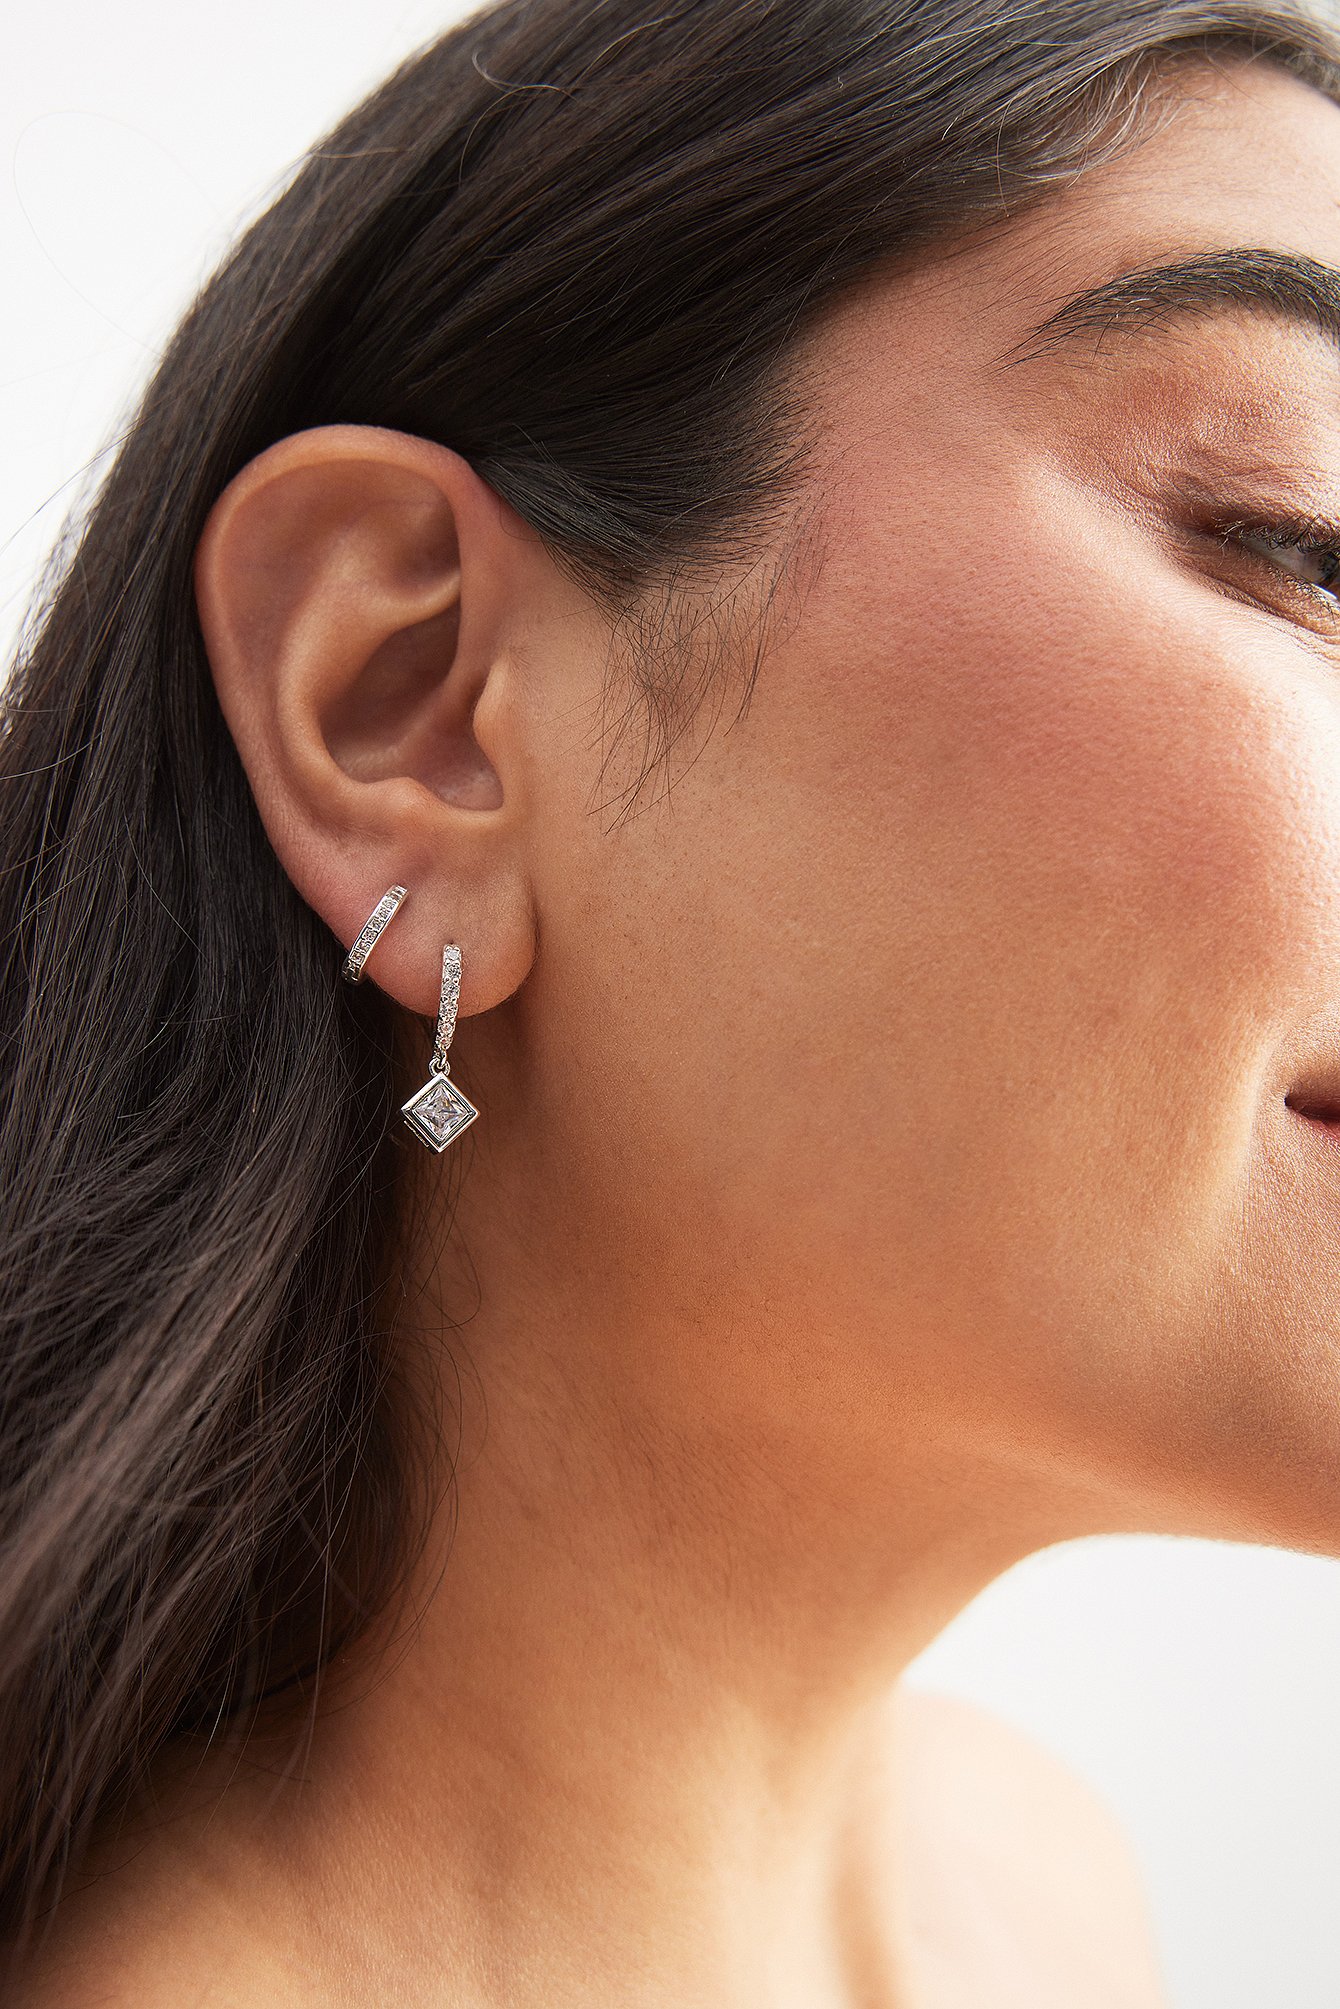 10 Best Chunky Earrings for Women 2023